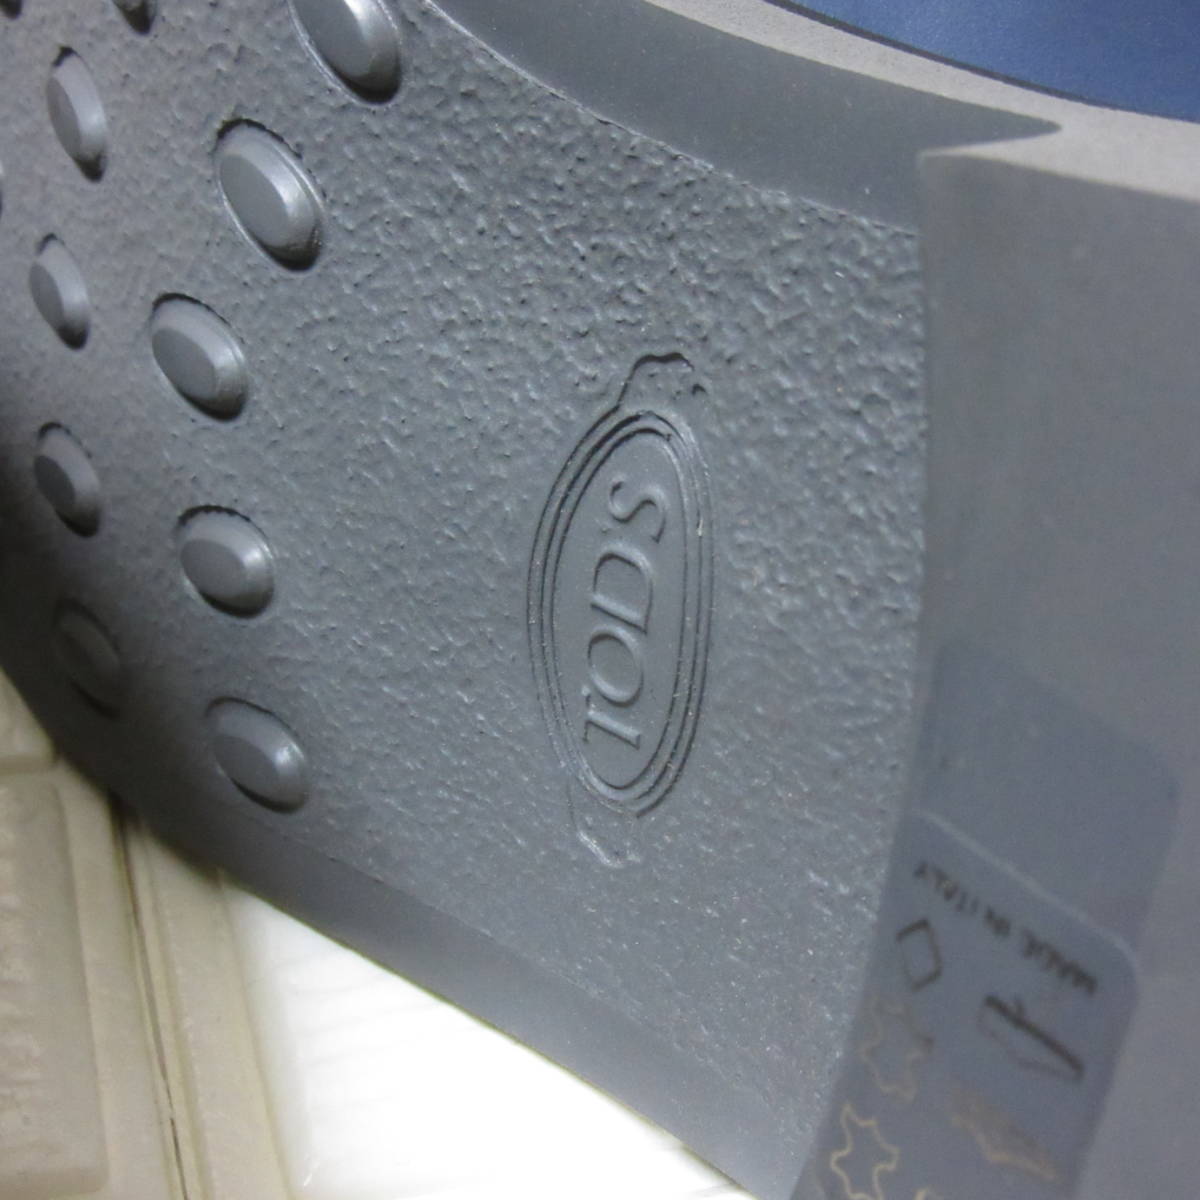 新品箱入り TOD'S トッズ イタリア製 最高級 メンズ ドレスシューズ 革靴 レザーシューズ プレーントゥ ダービー ブルー 青 UK5.5 24.5cm 